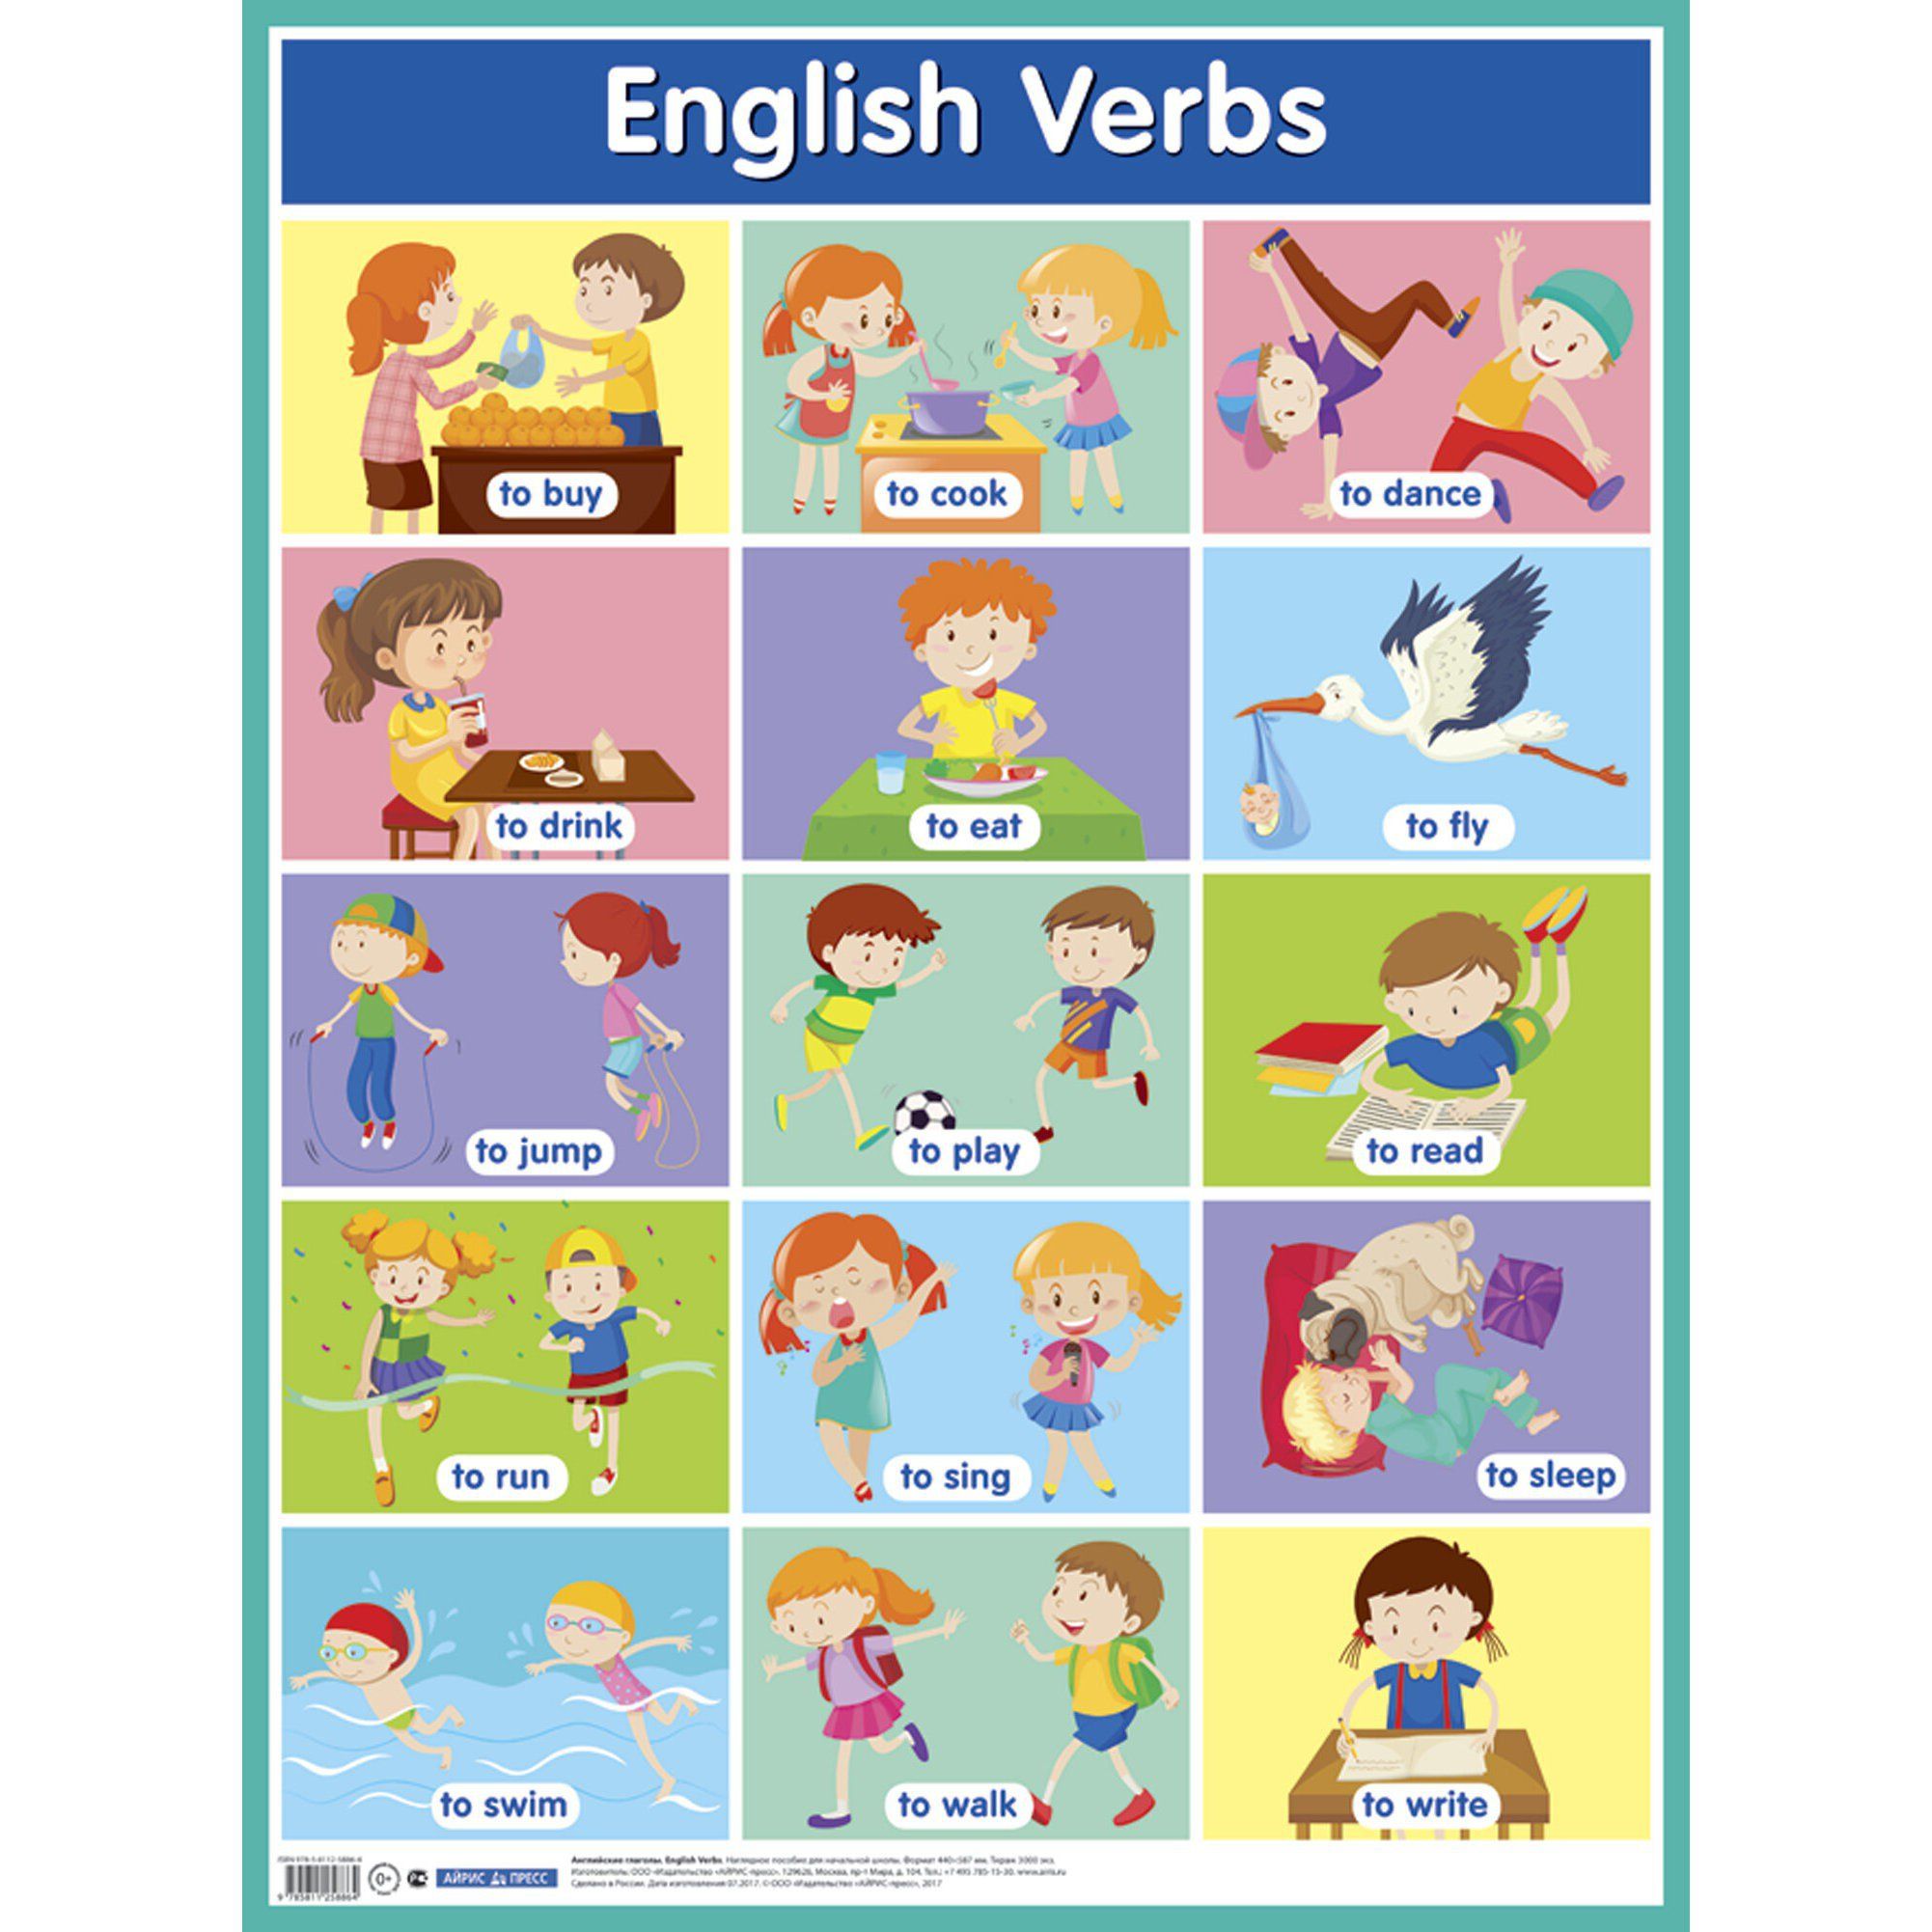 Популярные английские глаголы. Глаголы на английском для детей. Глаголы в английском языке для детей. Английские глаголы в картинках. Английские глаголы для дошкольников.